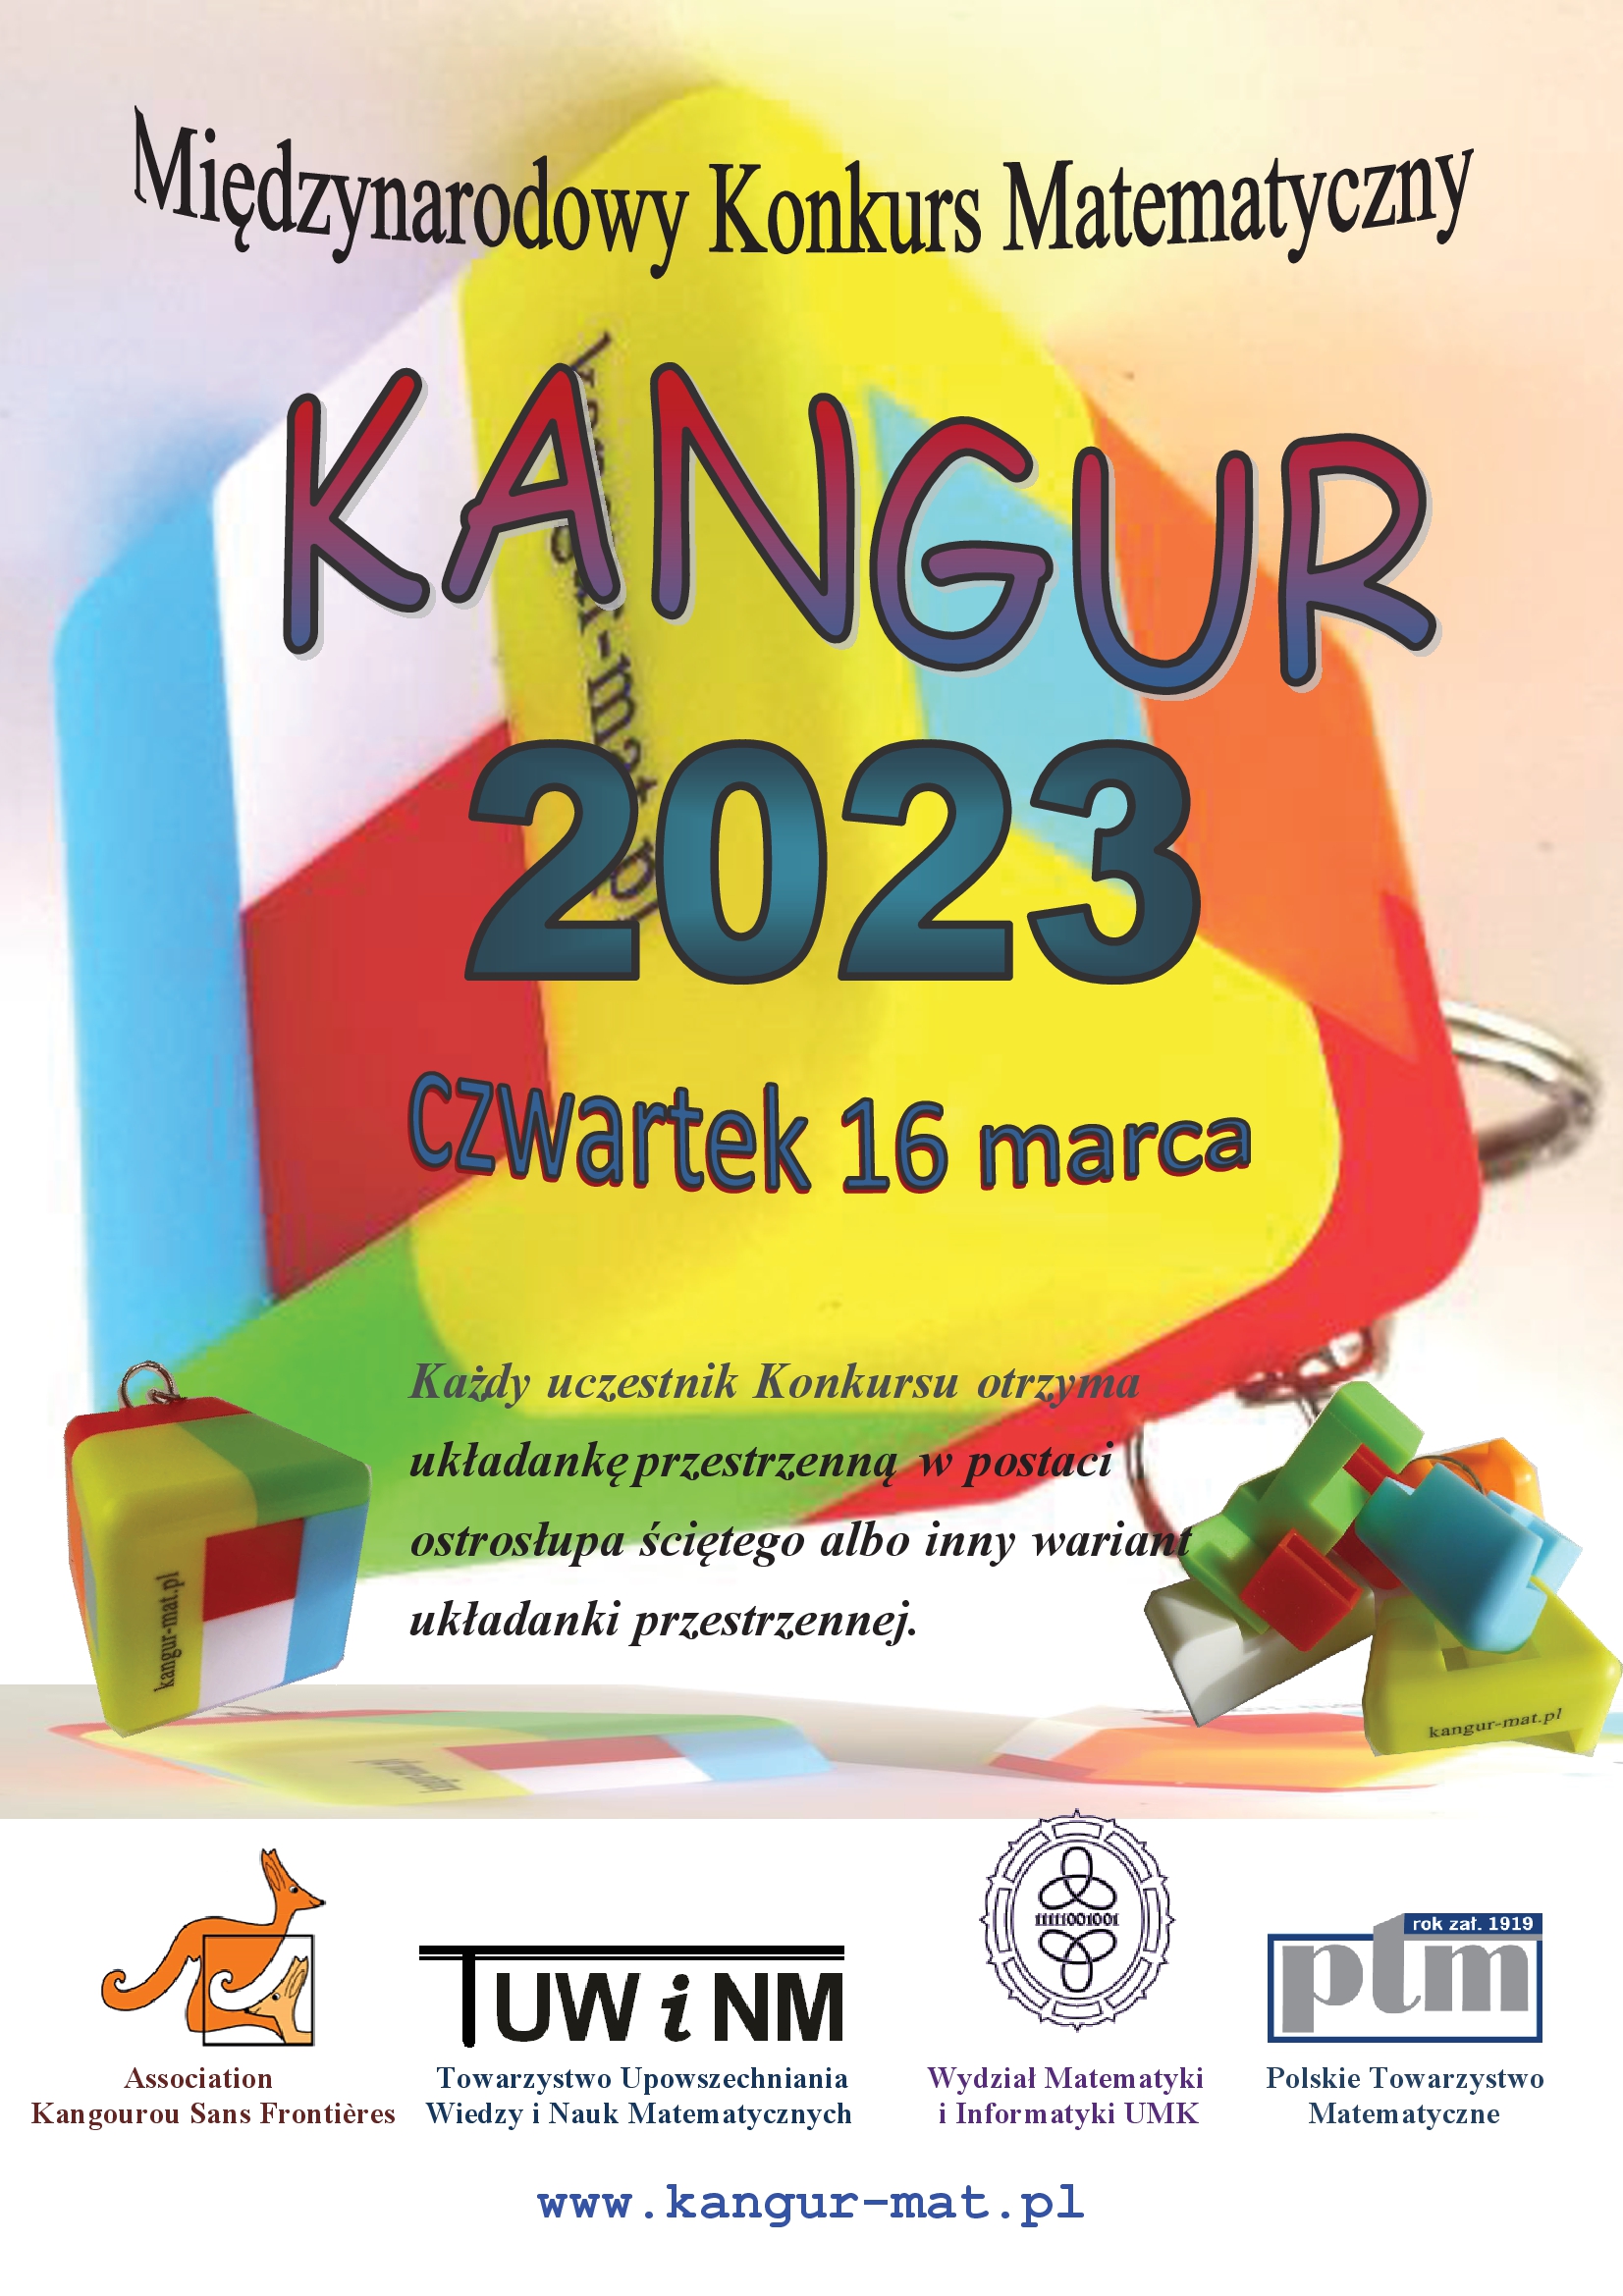 Kangur 2023